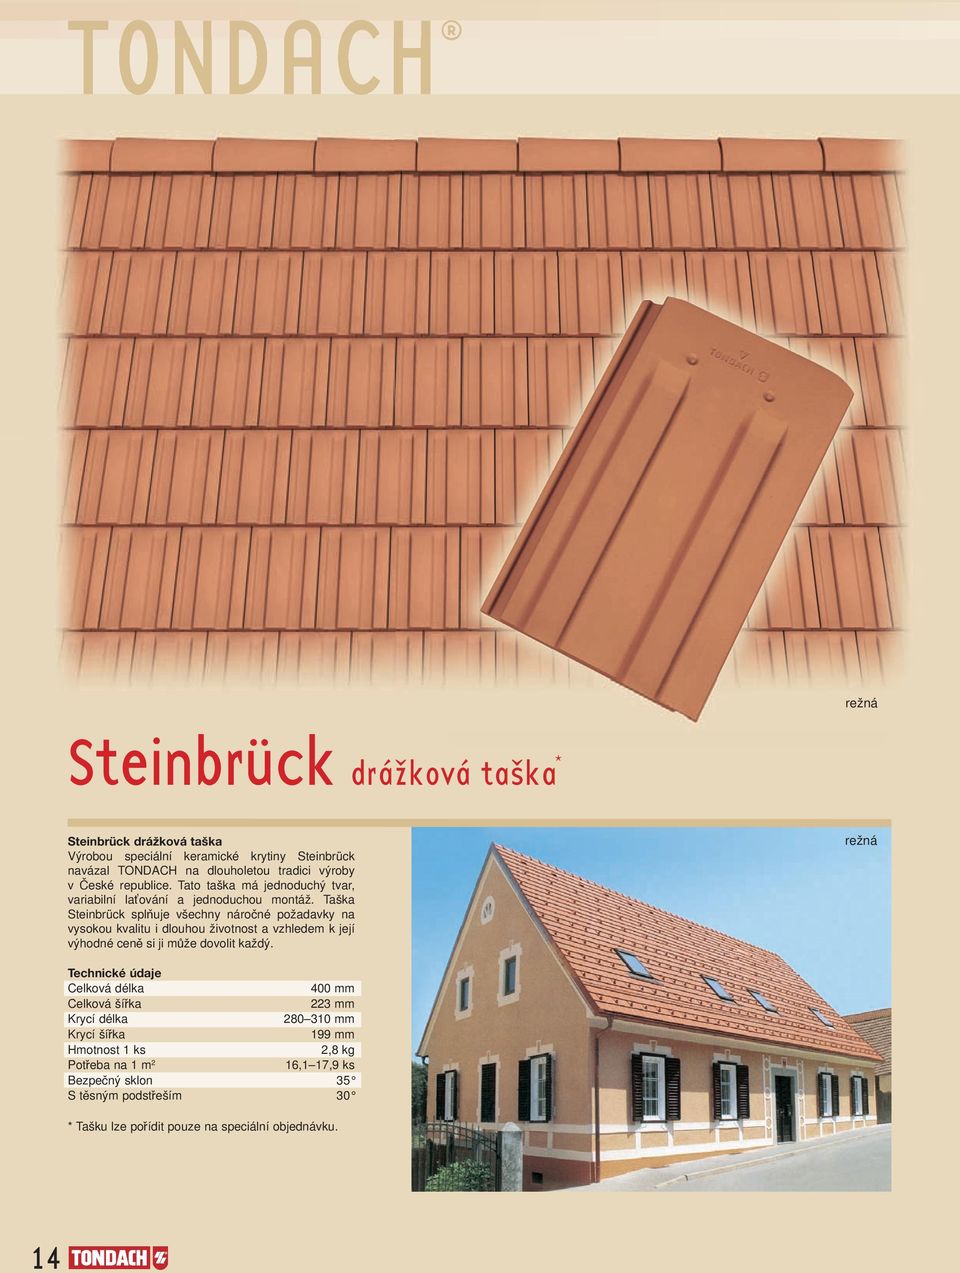 Taška Steinbrück splňuje všechny náročné požadavky na vysokou kvalitu i dlouhou životnost a vzhledem k její výhodné ceně si ji může dovolit každý.